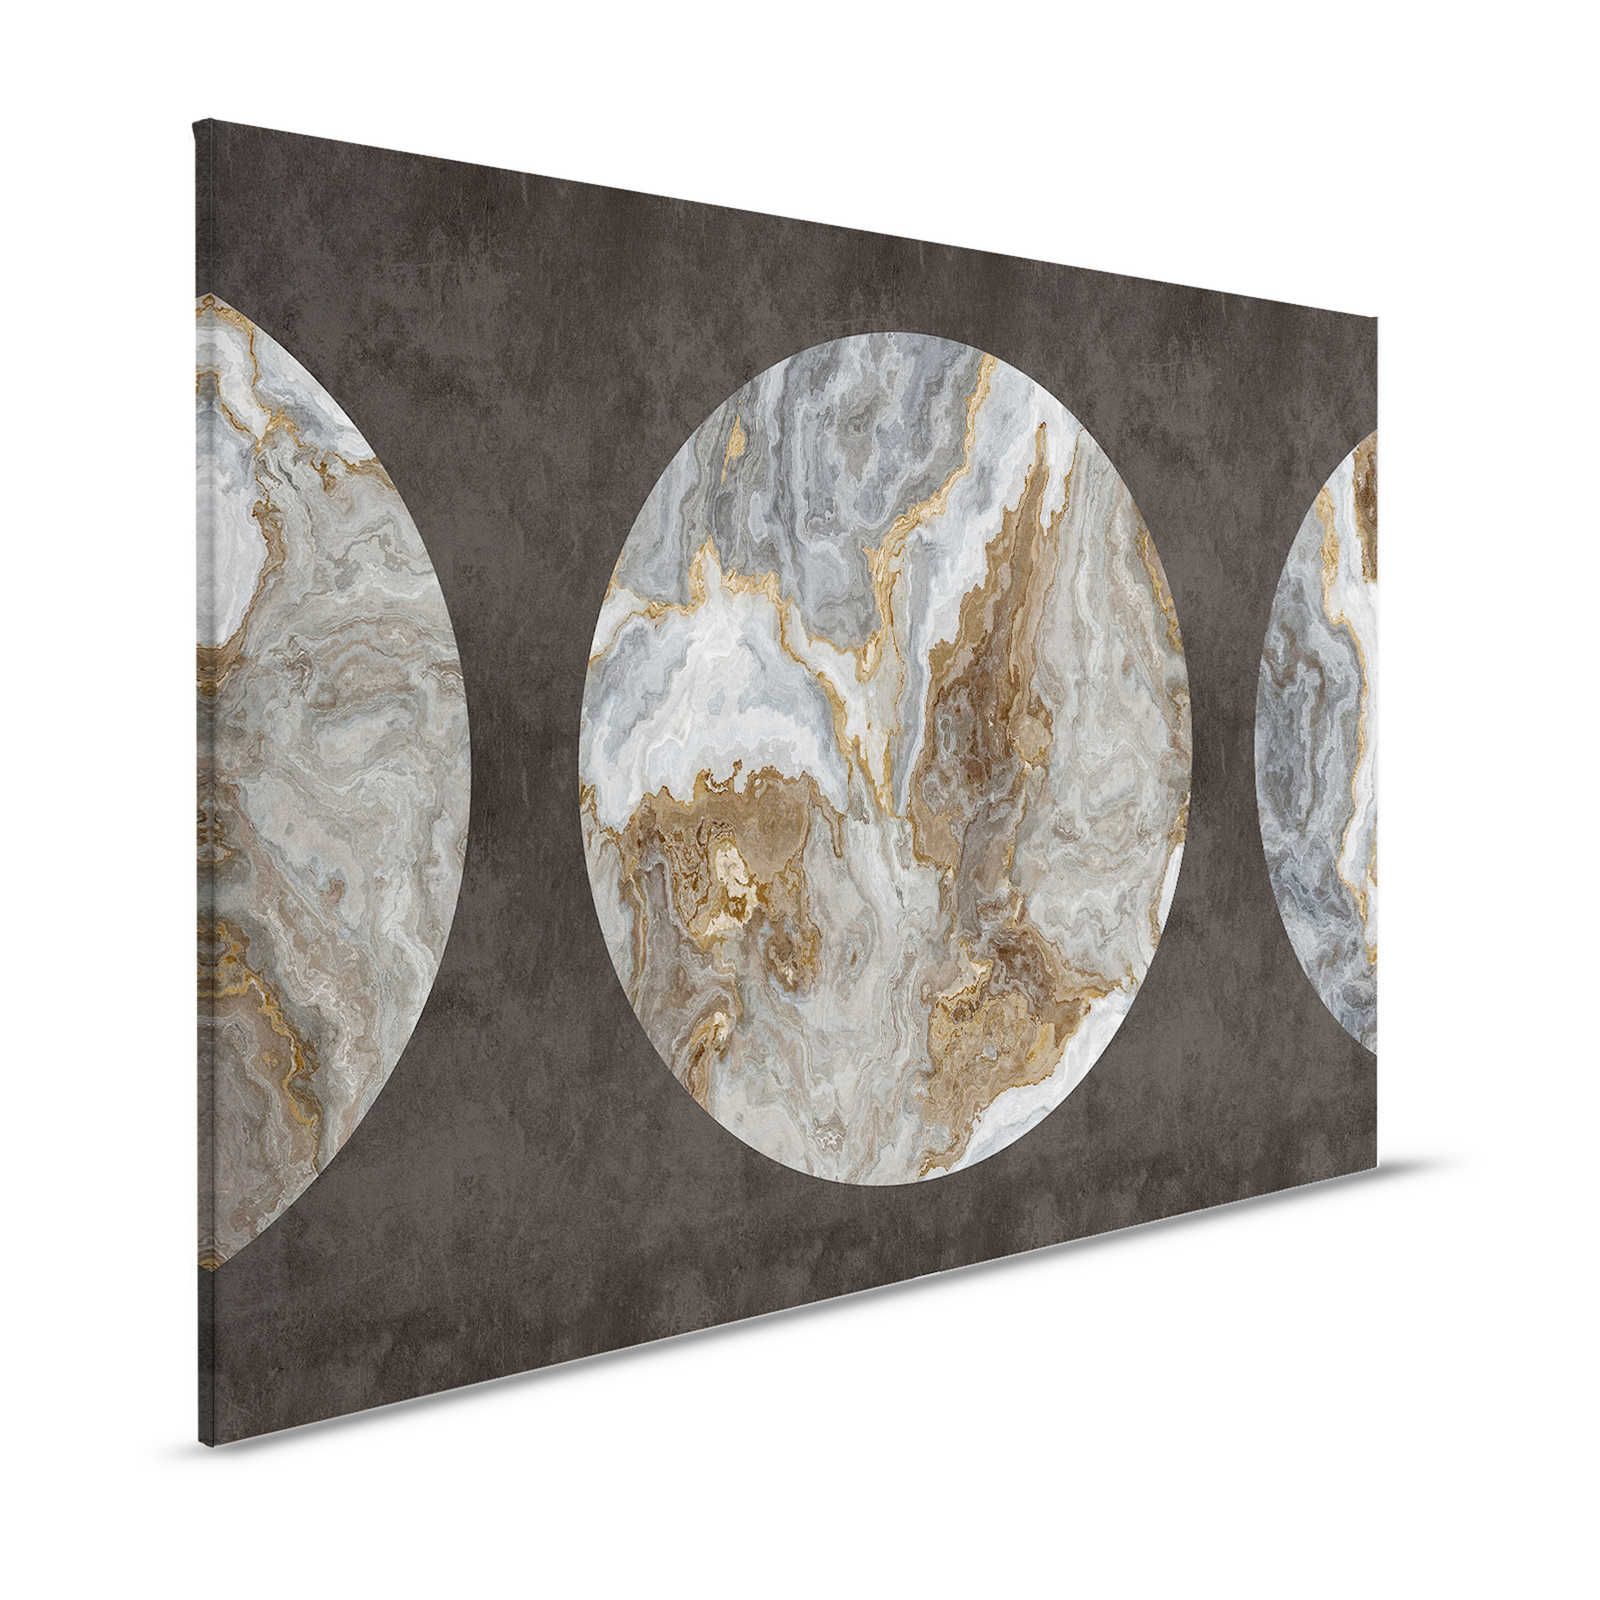 Luna 1 - Pittura su tela di marmo con disegno a cerchio e aspetto in gesso nero - 1,20 m x 0,80 m
